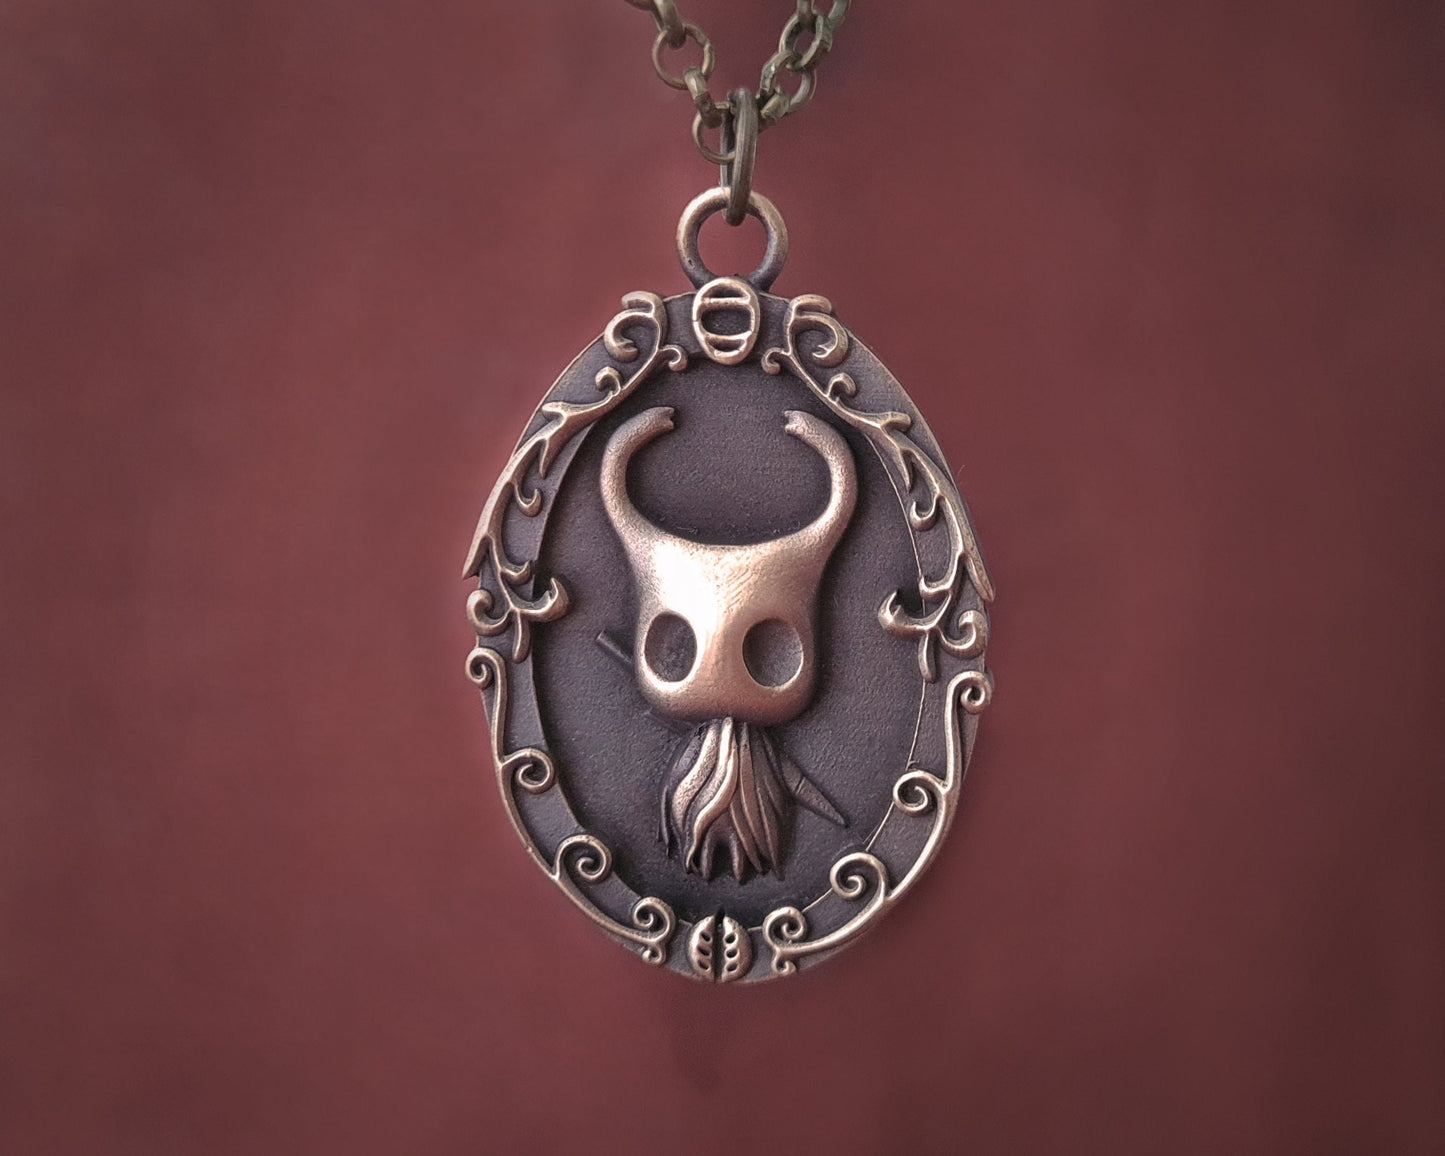 Brass Hollow Knight Pendant Necklace Charm Jewelry Charm - Baldur Jewelry